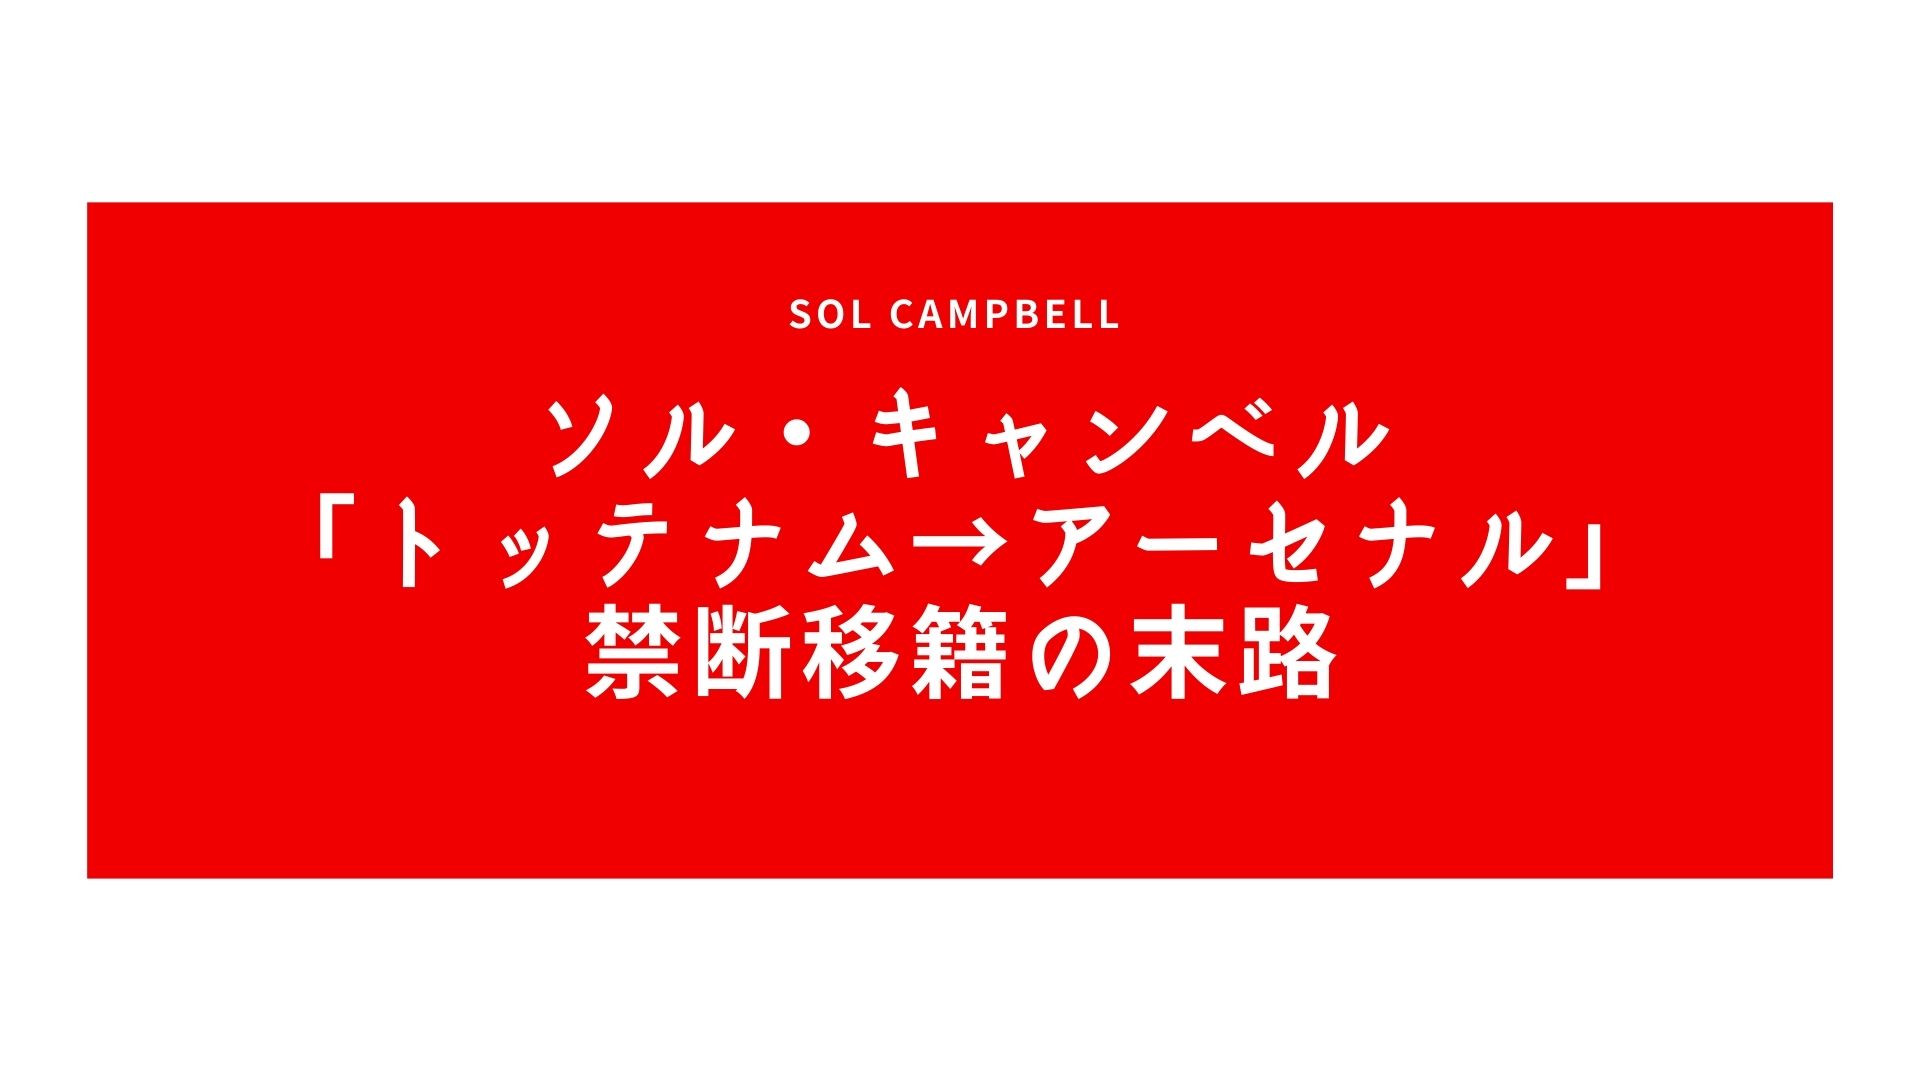 ソル・キャンベル「トッテナム→アーセナル」禁断移籍の末路